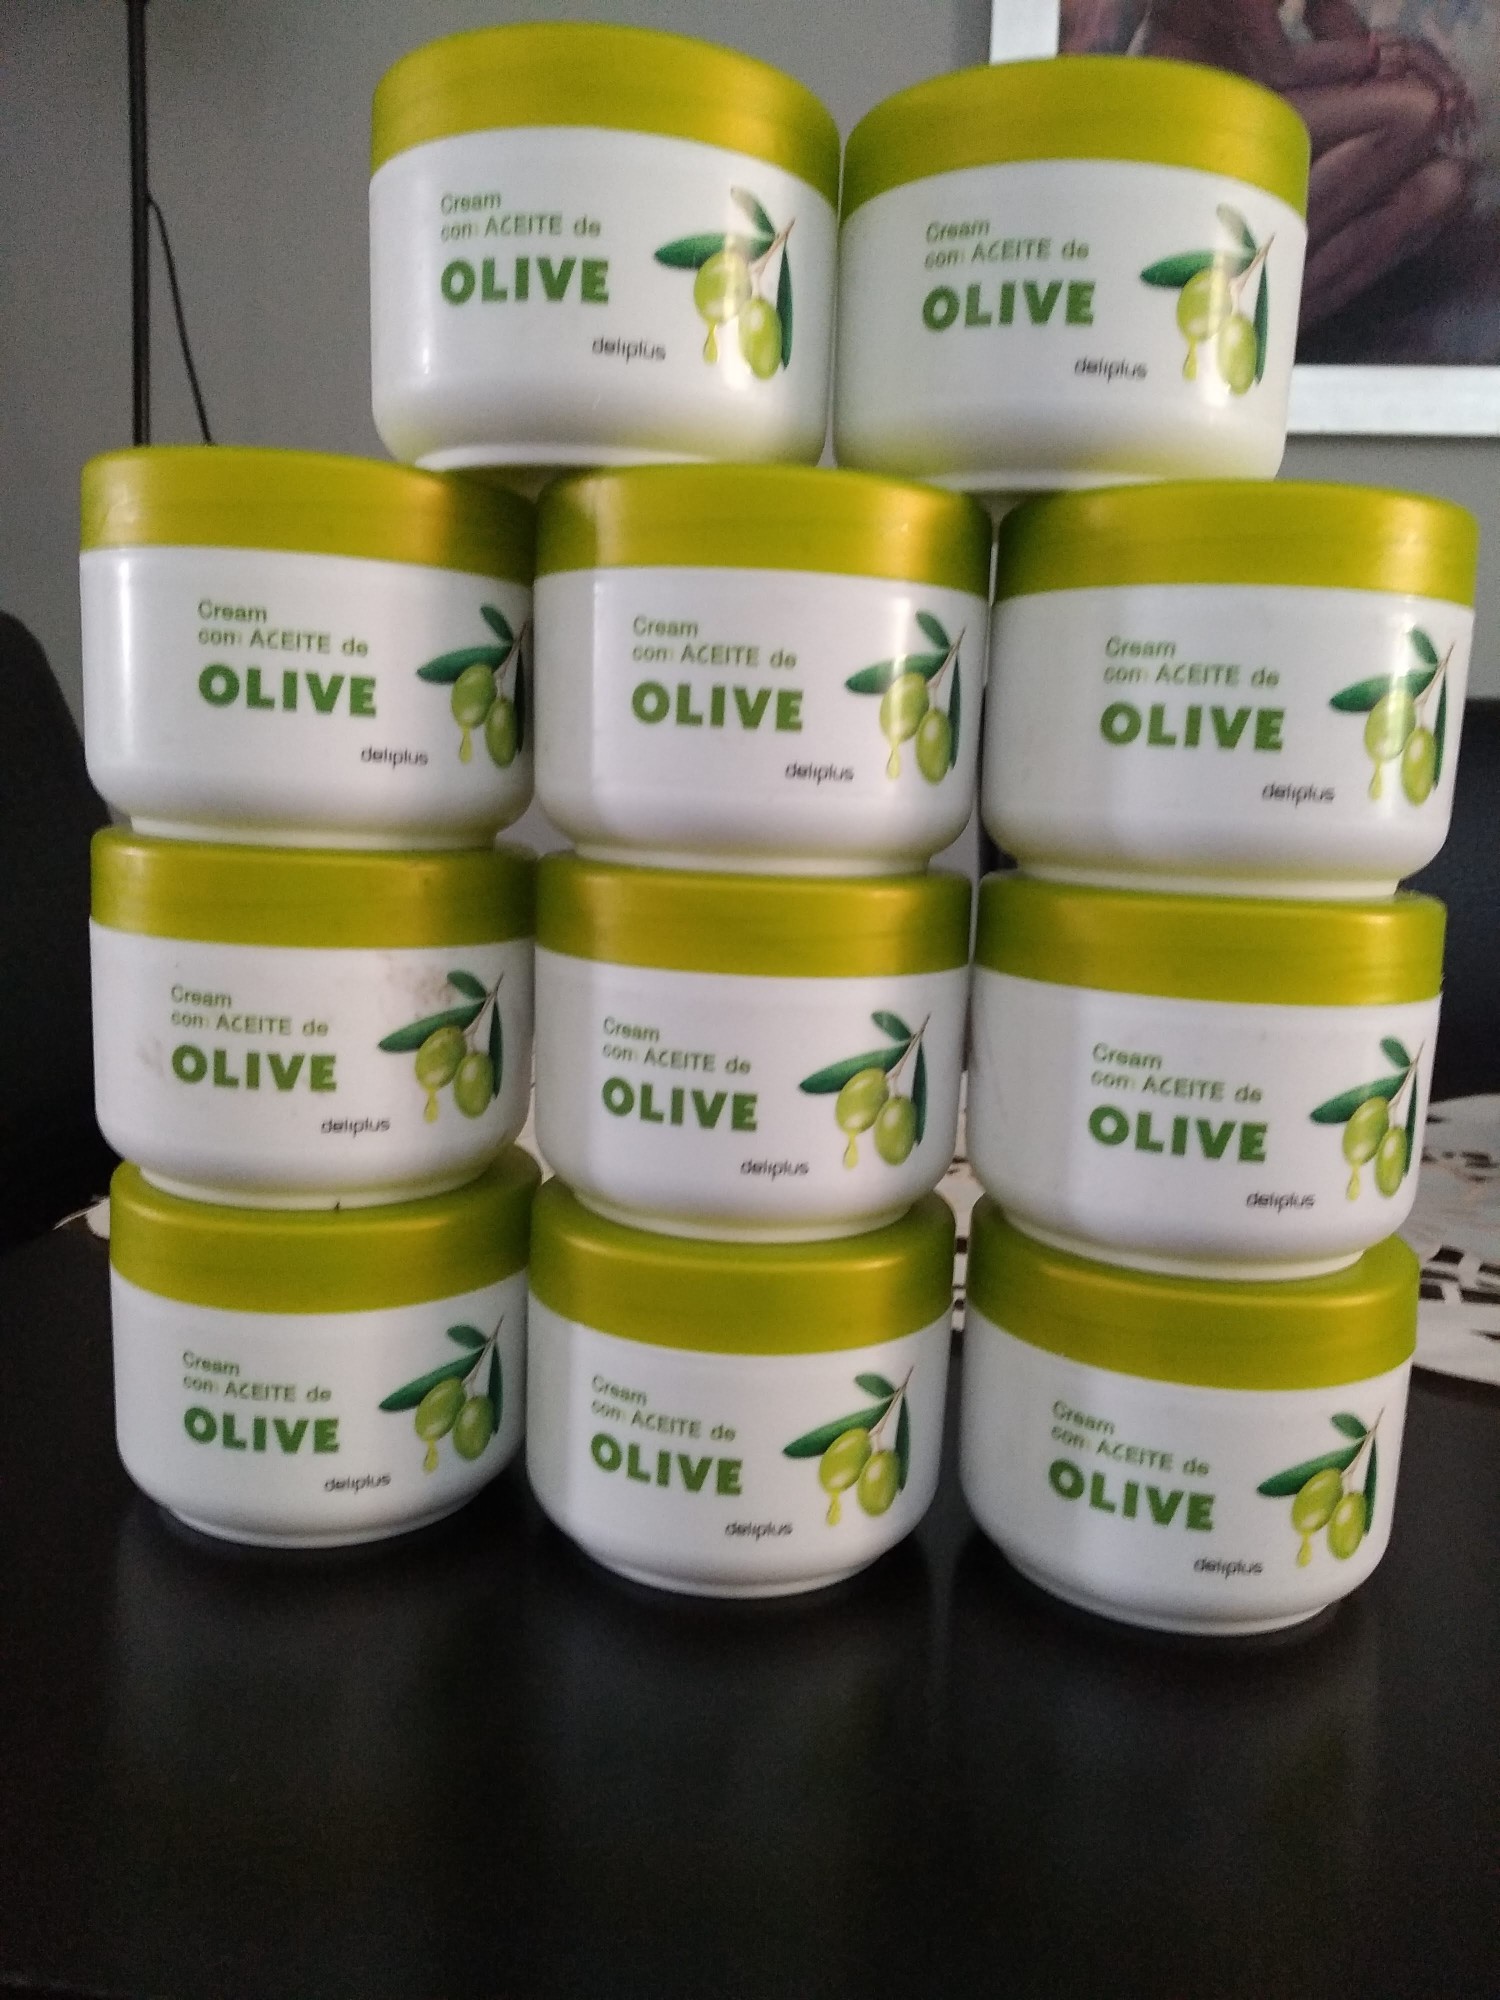 salud y belleza - Crema de aceite de oliva